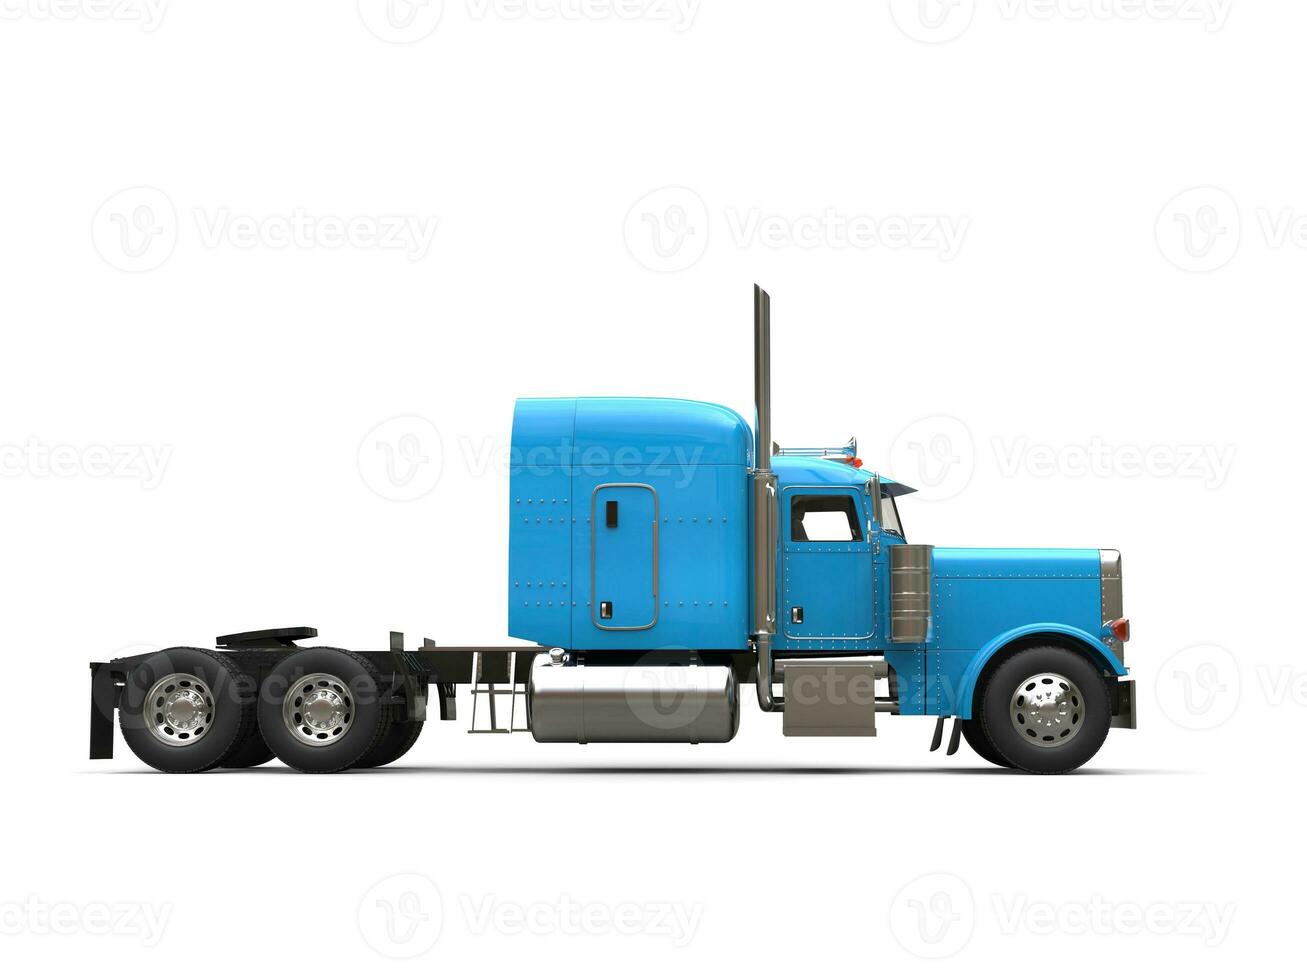 brilhante azul 18 veículo com rodas caminhão - não reboque - lado Visão foto